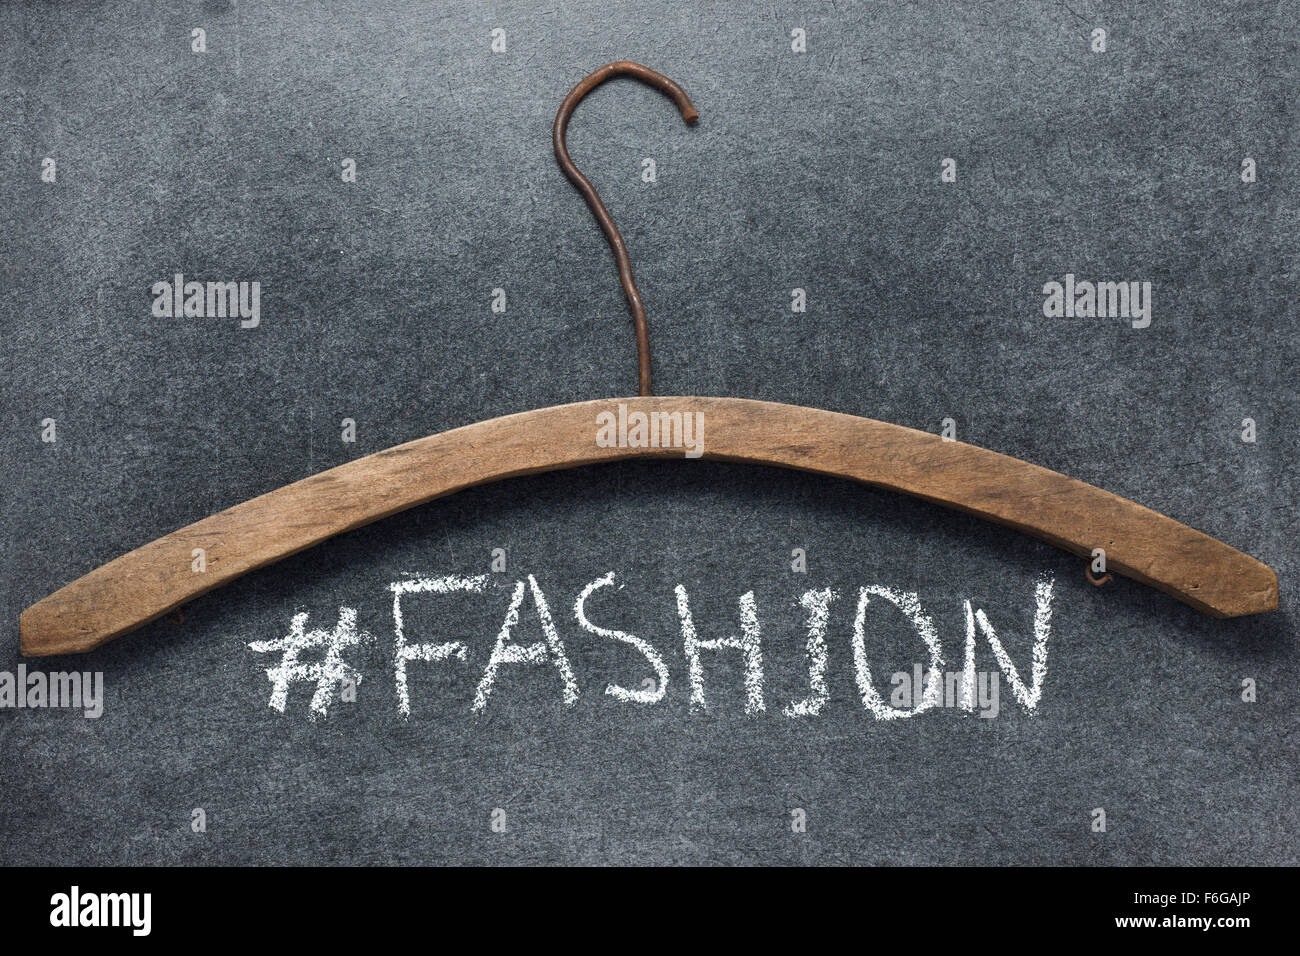 Hashtag fashion firma manoscritta su lavagna con vintage appendiabiti in legno Foto Stock